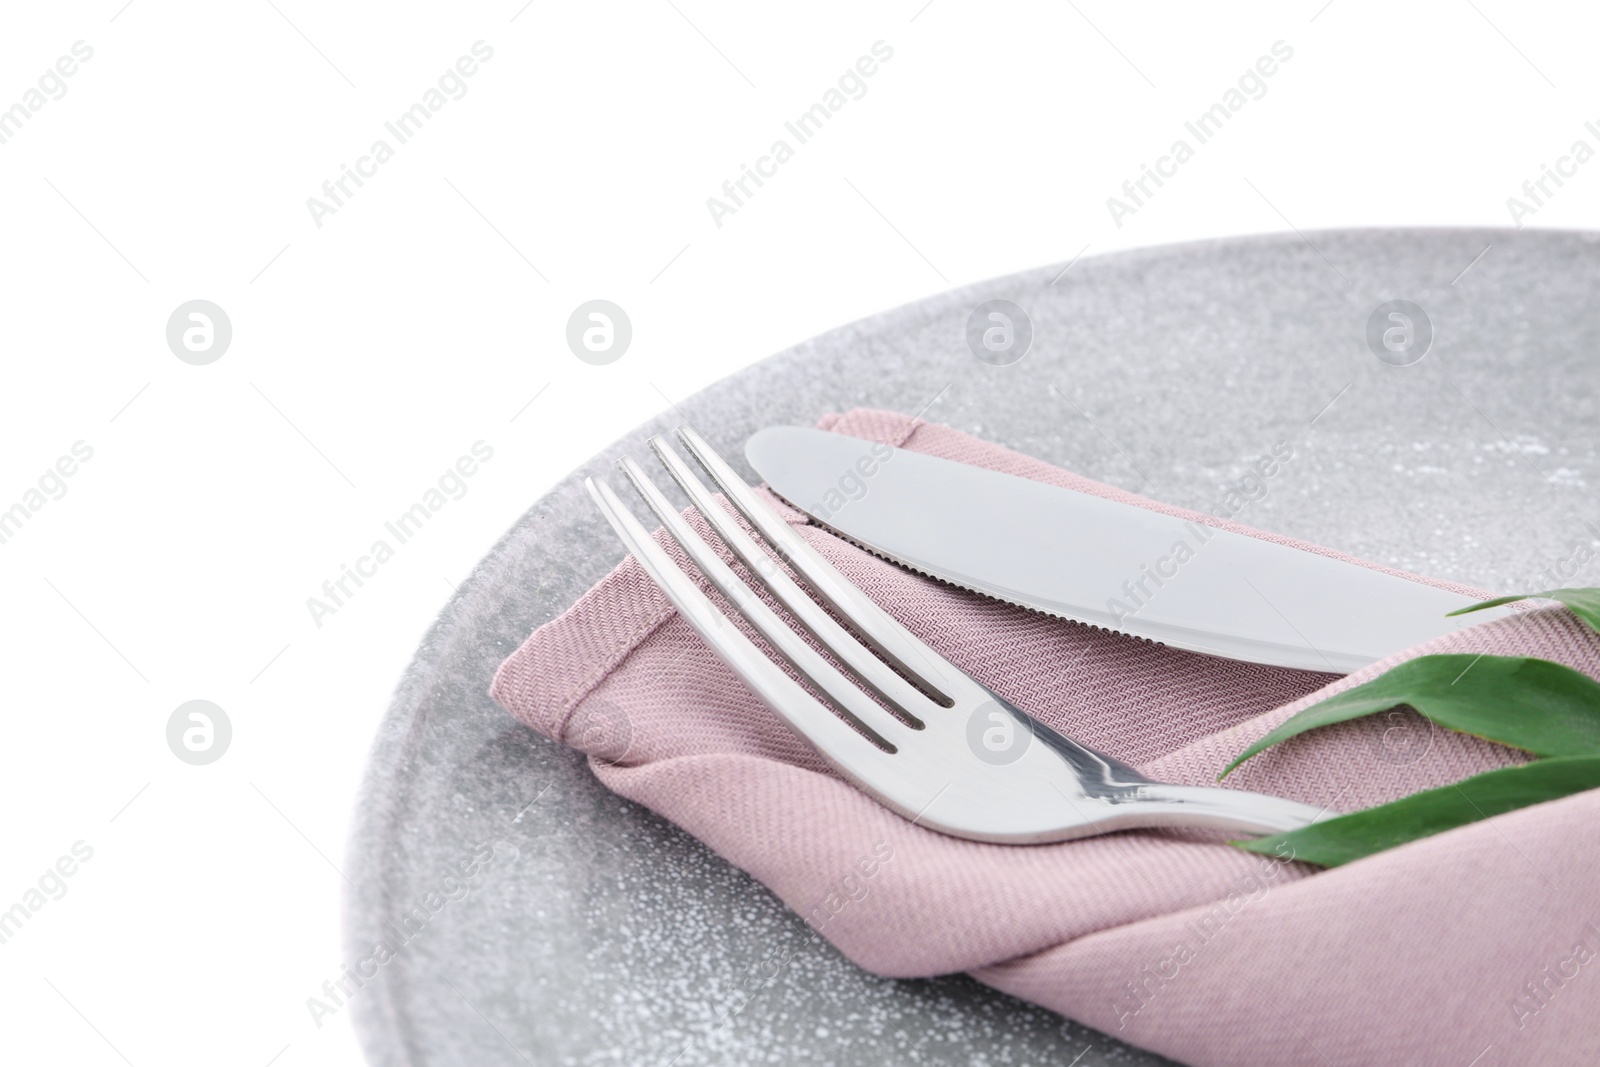 Photo of Stylish elegant table setting on white background